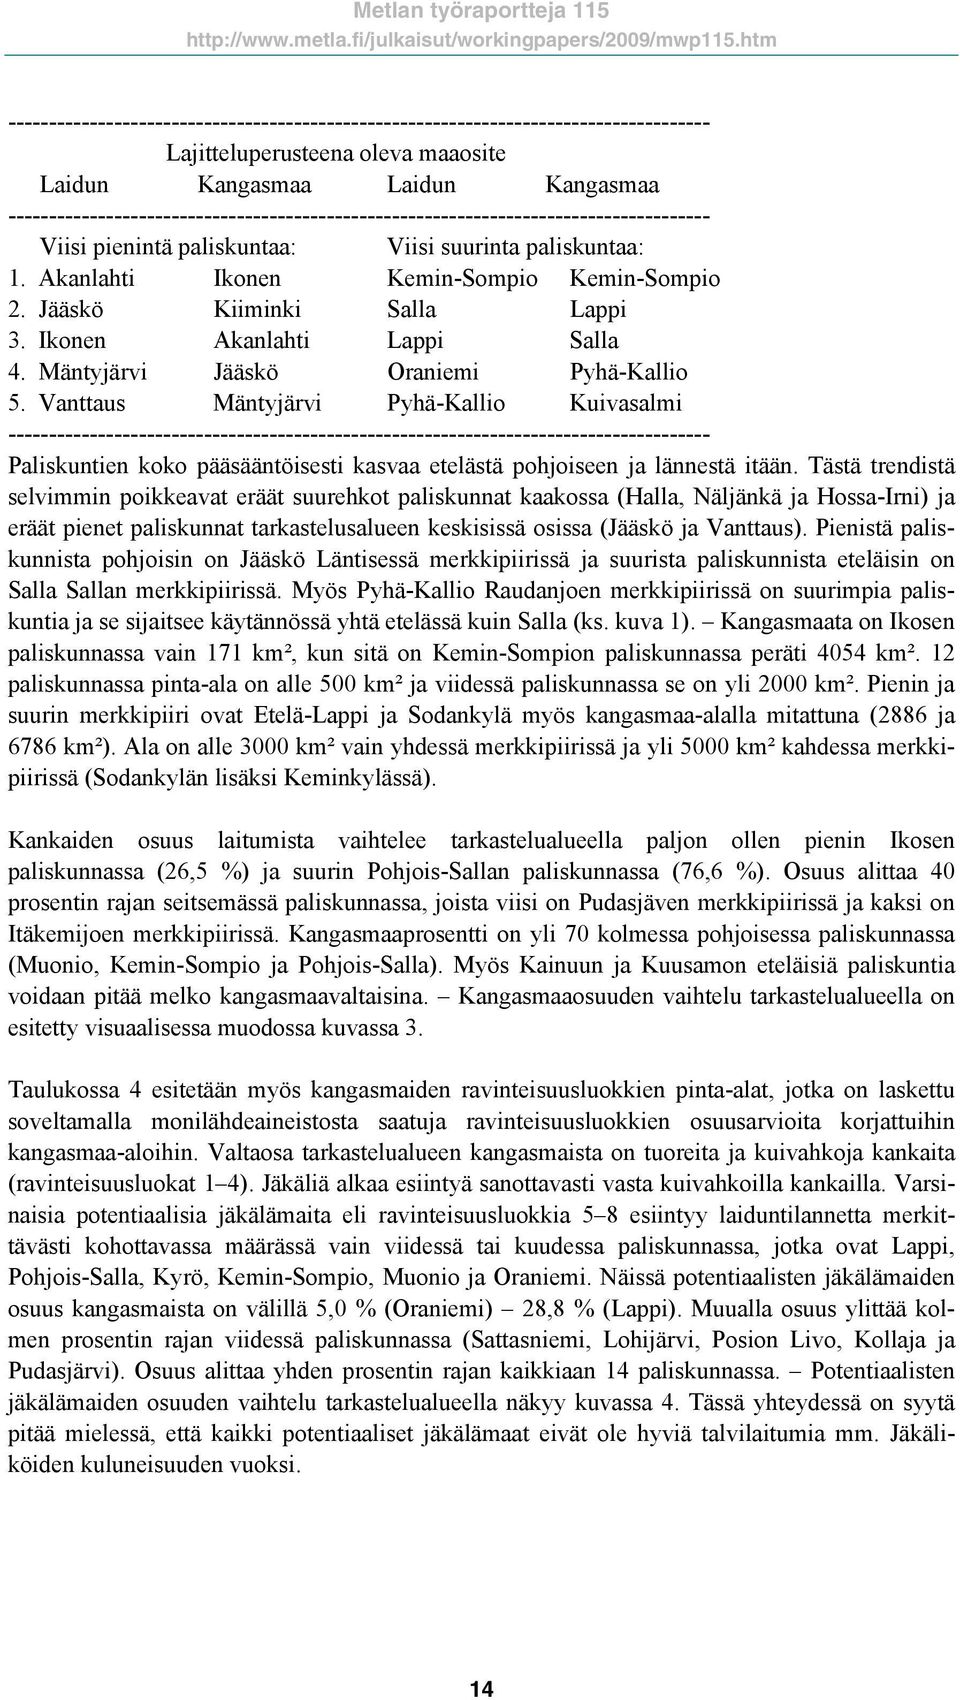 Jääskö Kiiminki Salla Lappi 3. Ikonen Akanlahti Lappi Salla 4. Mäntyjärvi Jääskö Oraniemi Pyhä-Kallio 5.